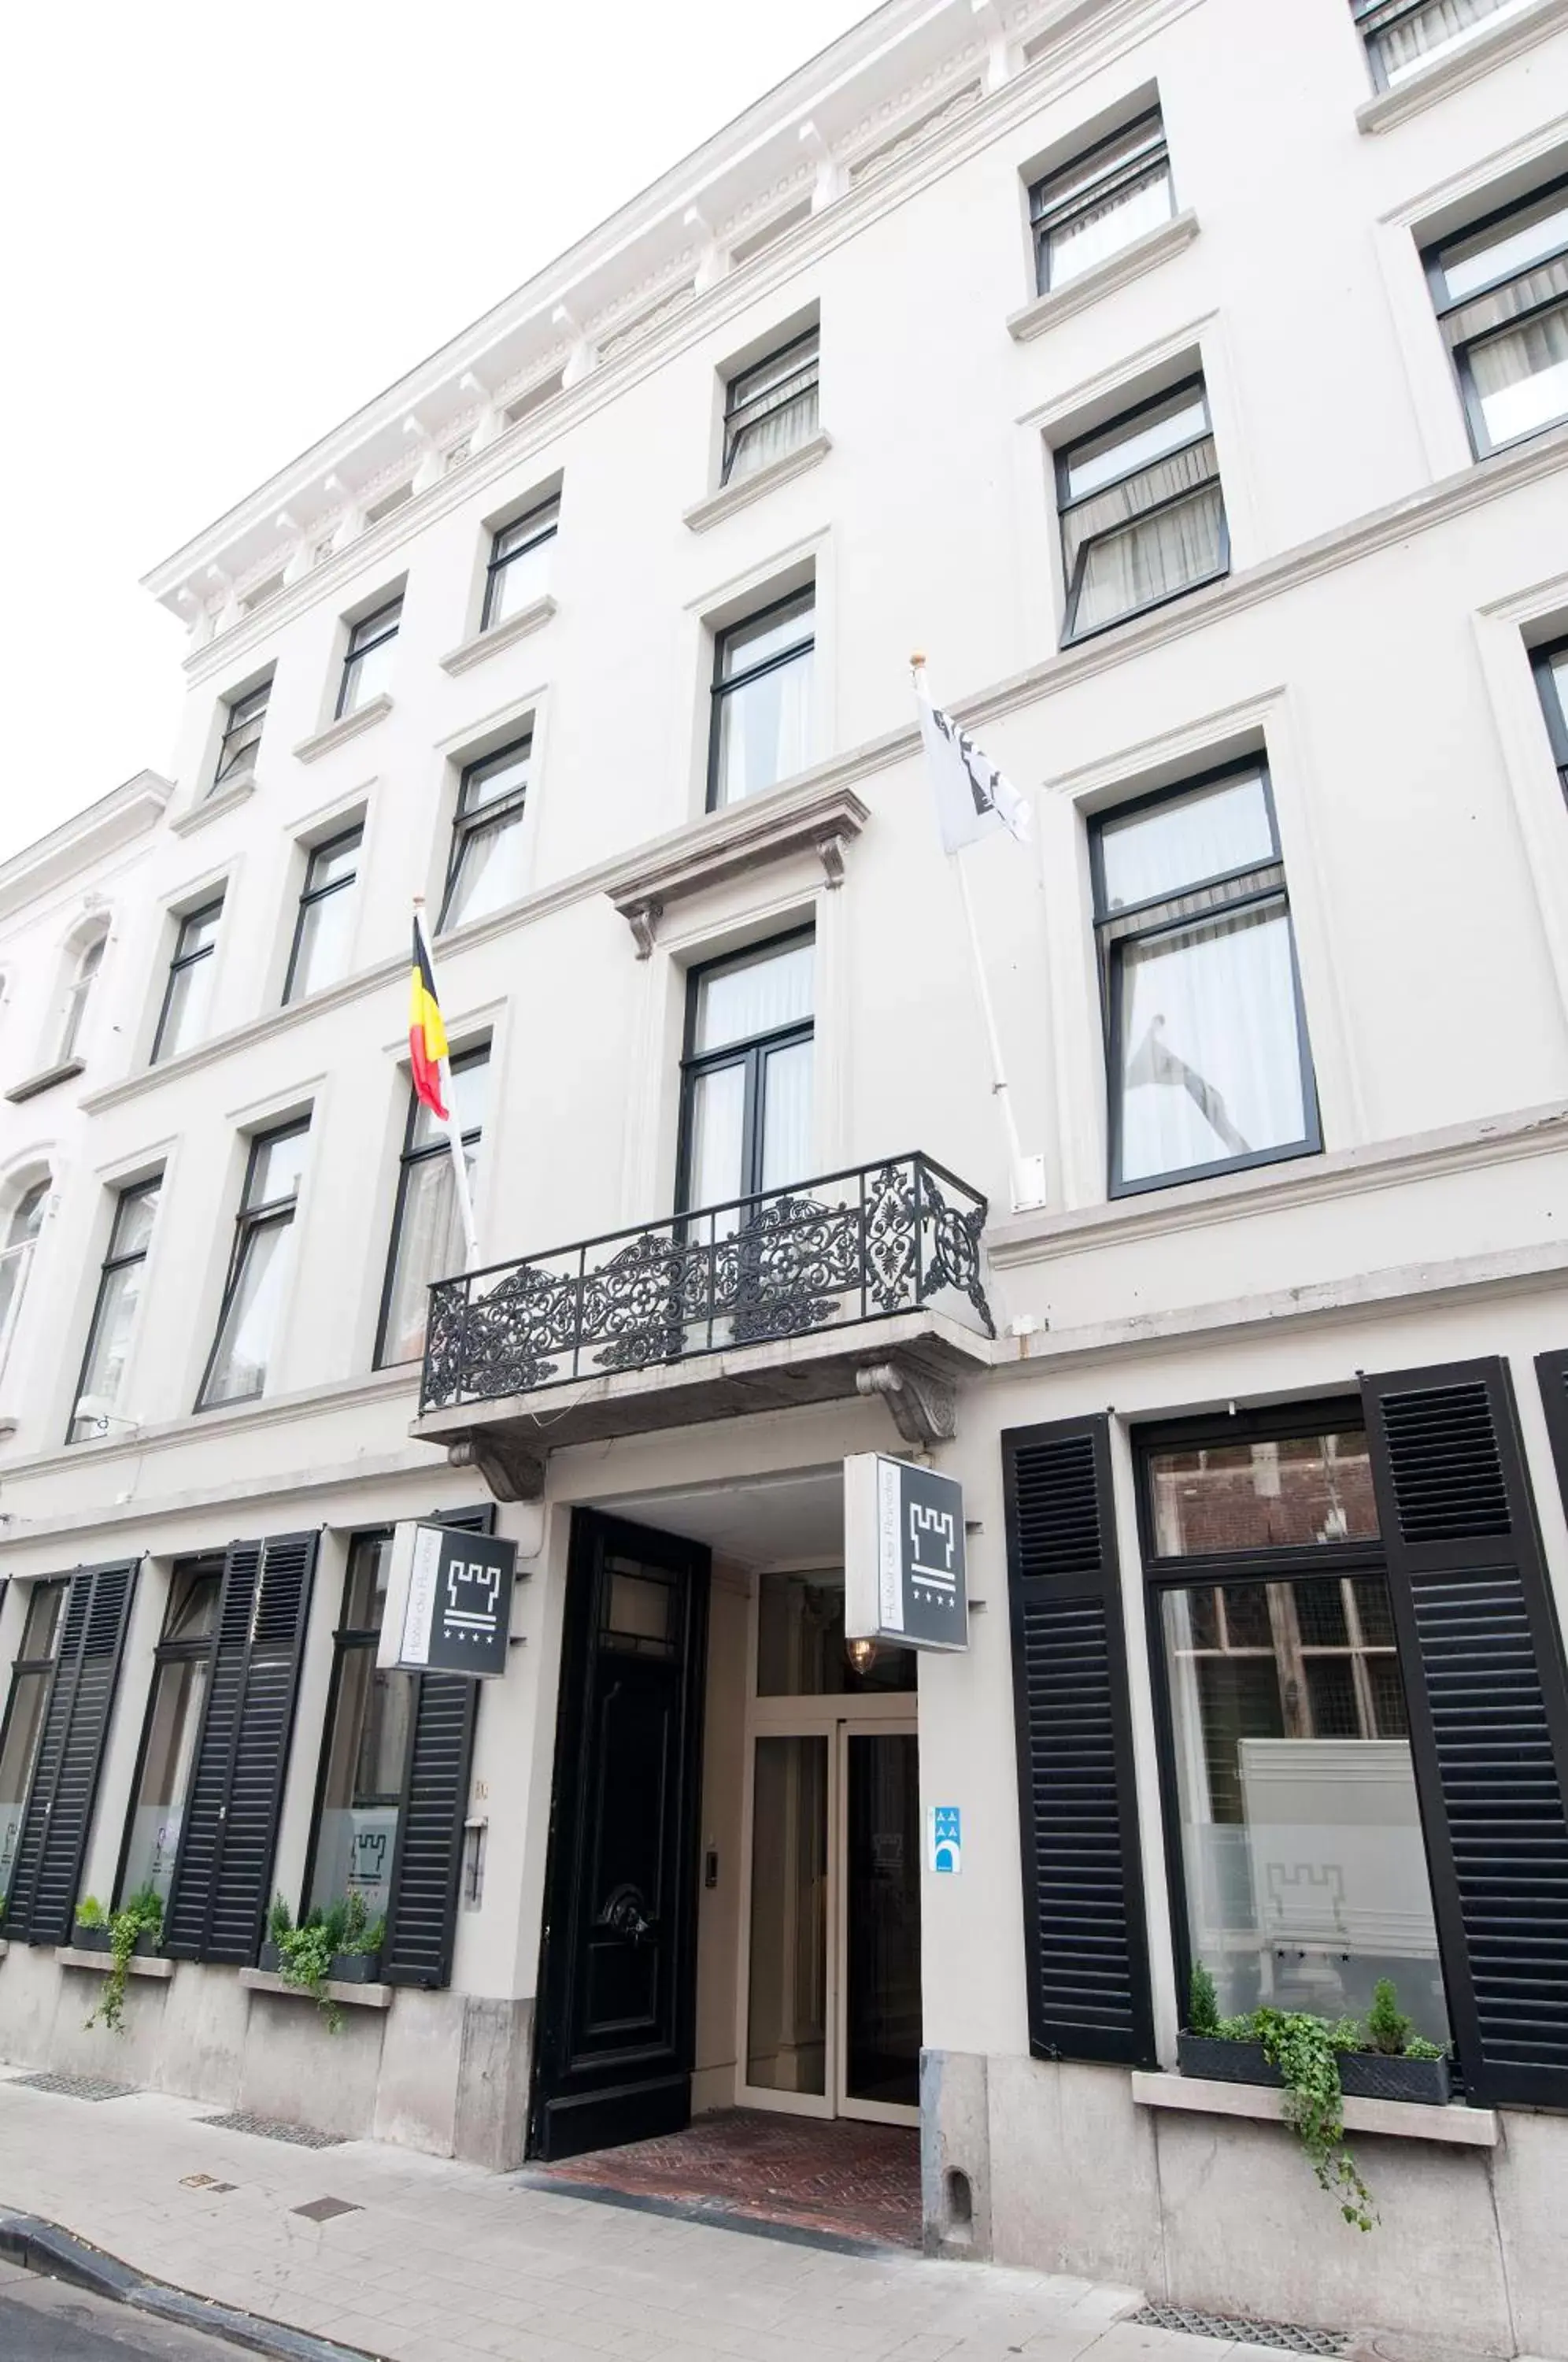 Facade/entrance, Property Building in Hotel de Flandre